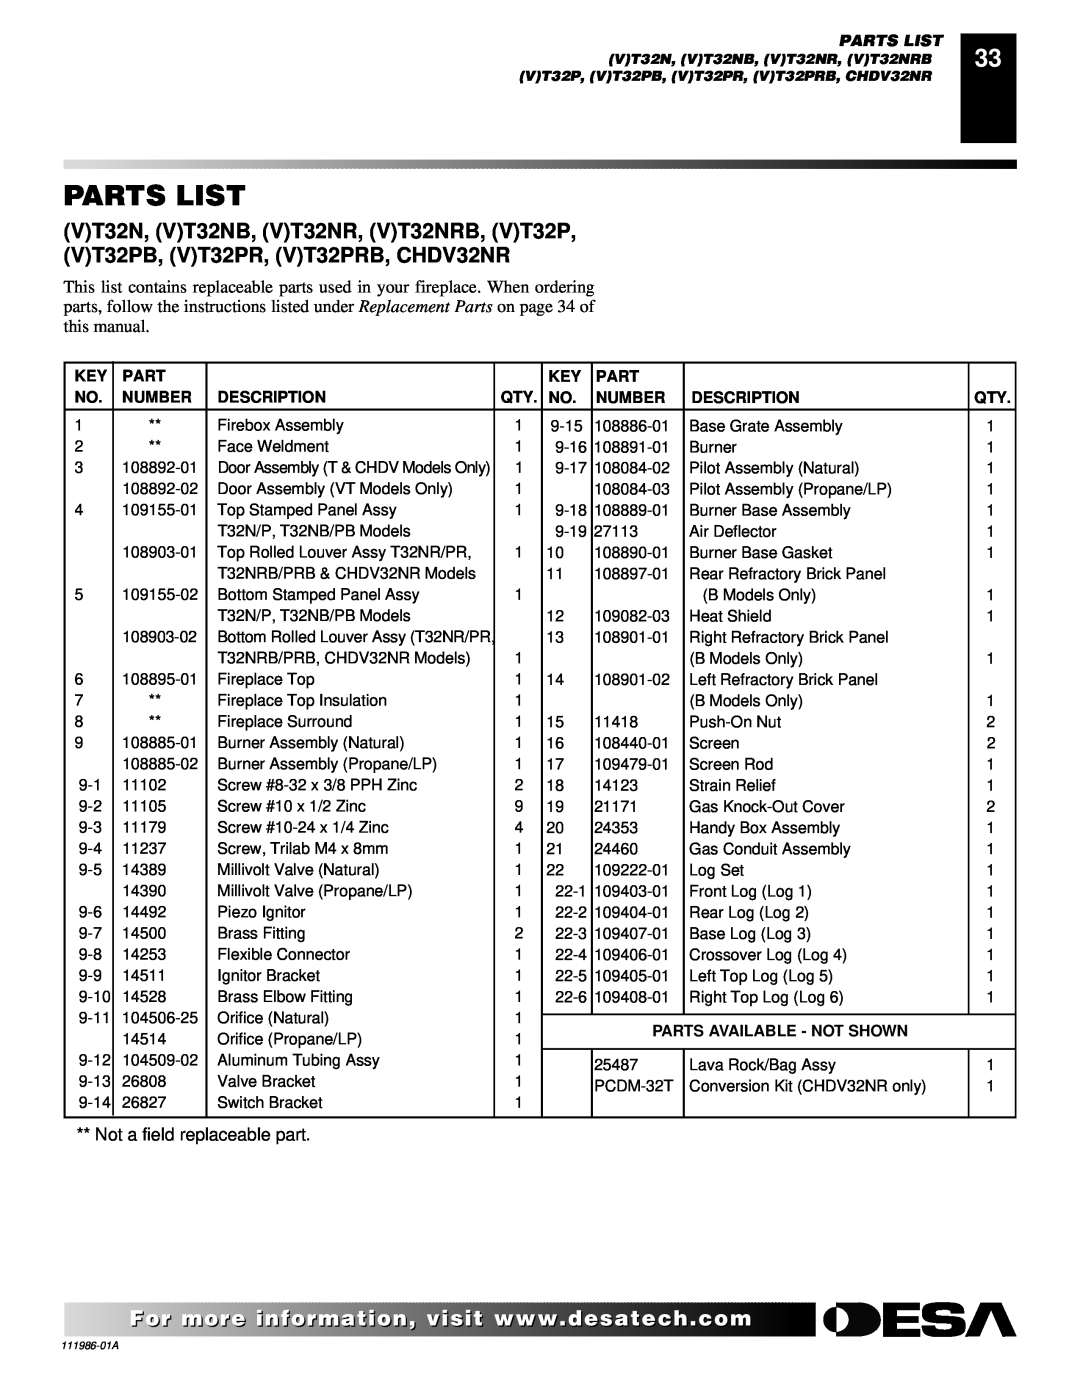 Desa T32N, T32P installation manual Parts List, Number, Description, Parts Available - Not Shown 